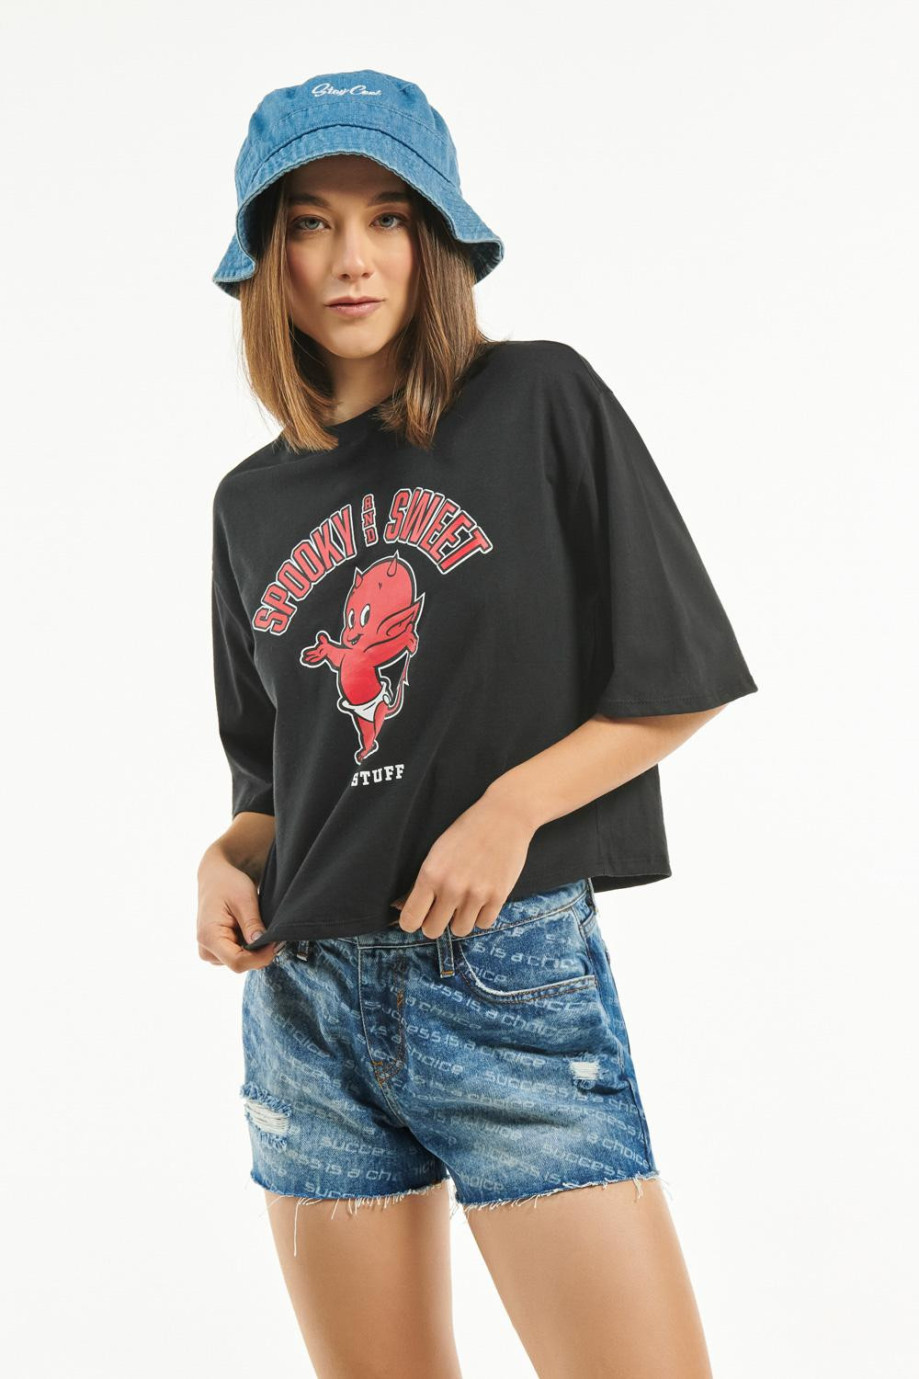 Camiseta negra crop top oversize con estampado de Hot Stuff y cuello redondo